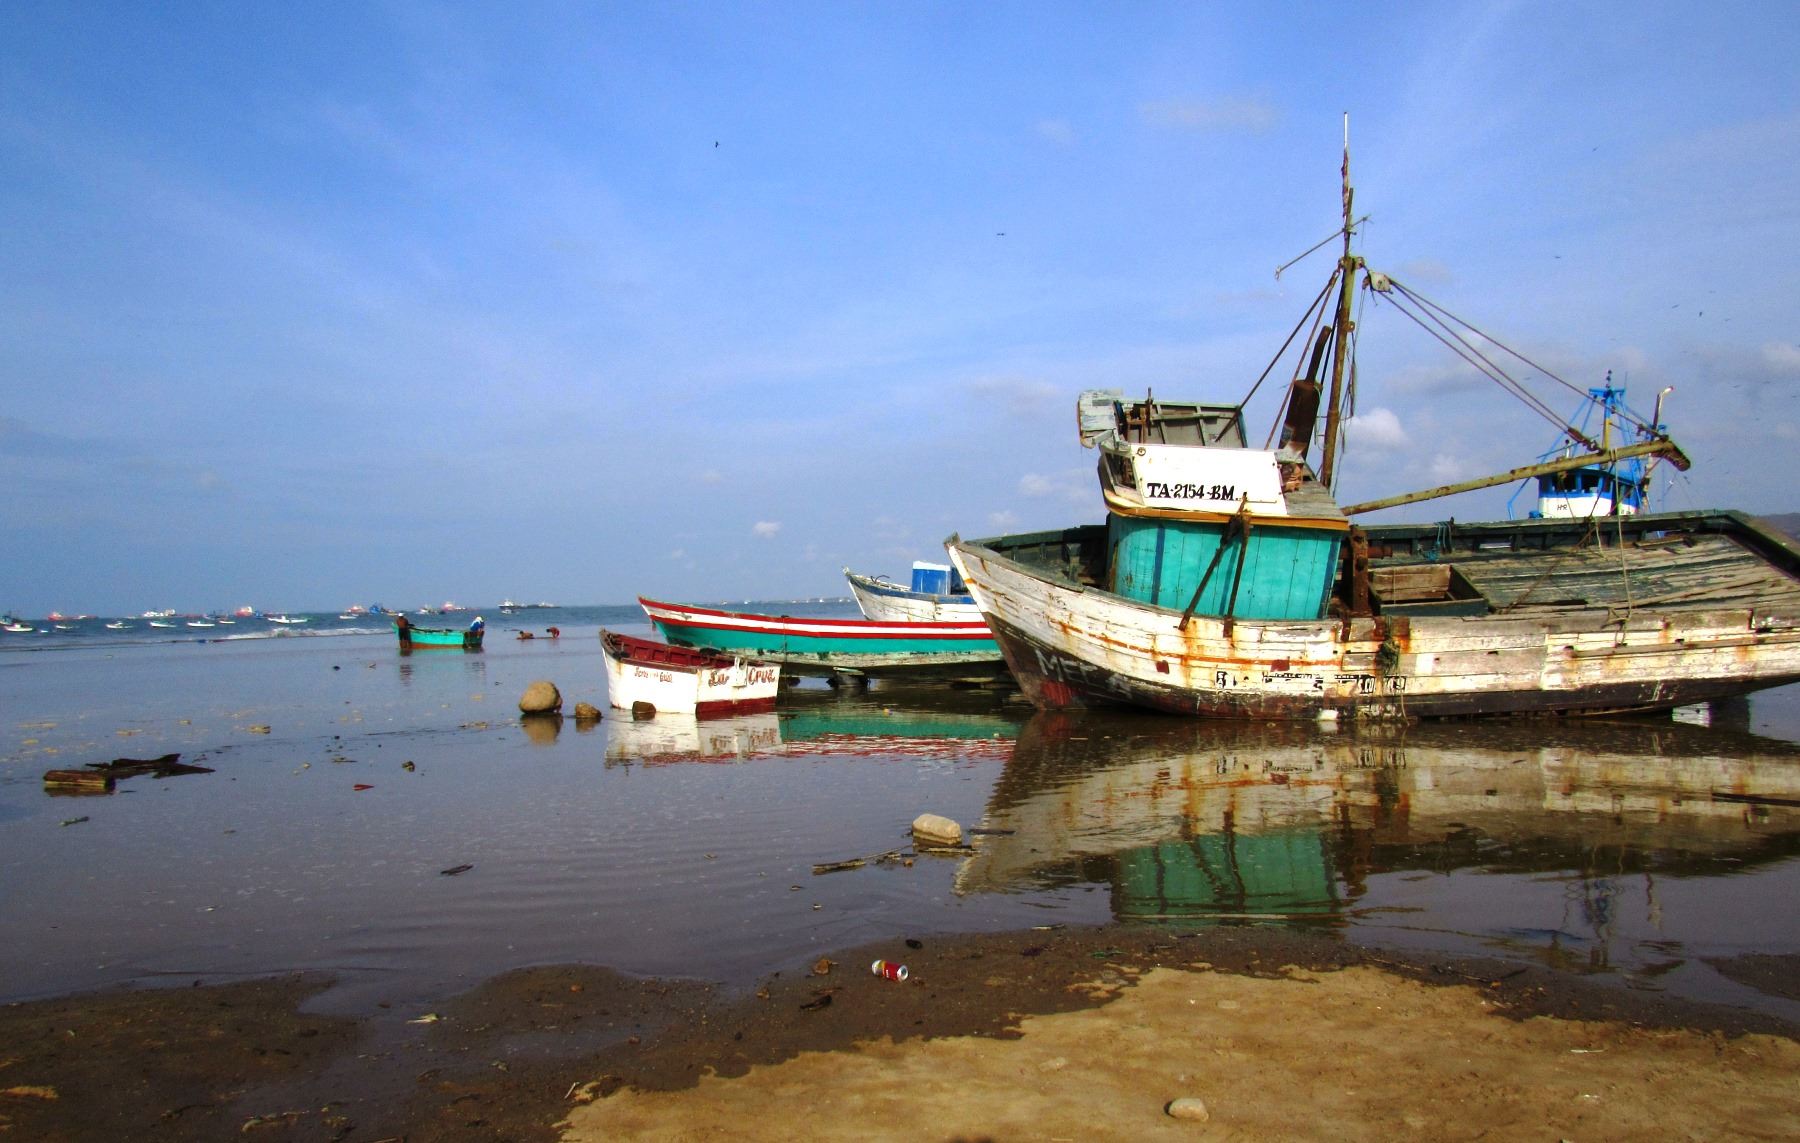 Un total de 45 puertos de todo el litoral del país se encuentran cerrados como medida de prevención ante la presencia de oleajes ligeros, que continuarán hasta mañana sábado 30 de marzo, de acuerdo al último aviso emitido por la Dirección de Hidrografía y Navegación (DHN) de la Marina de Guerra del Perú. ANDINA